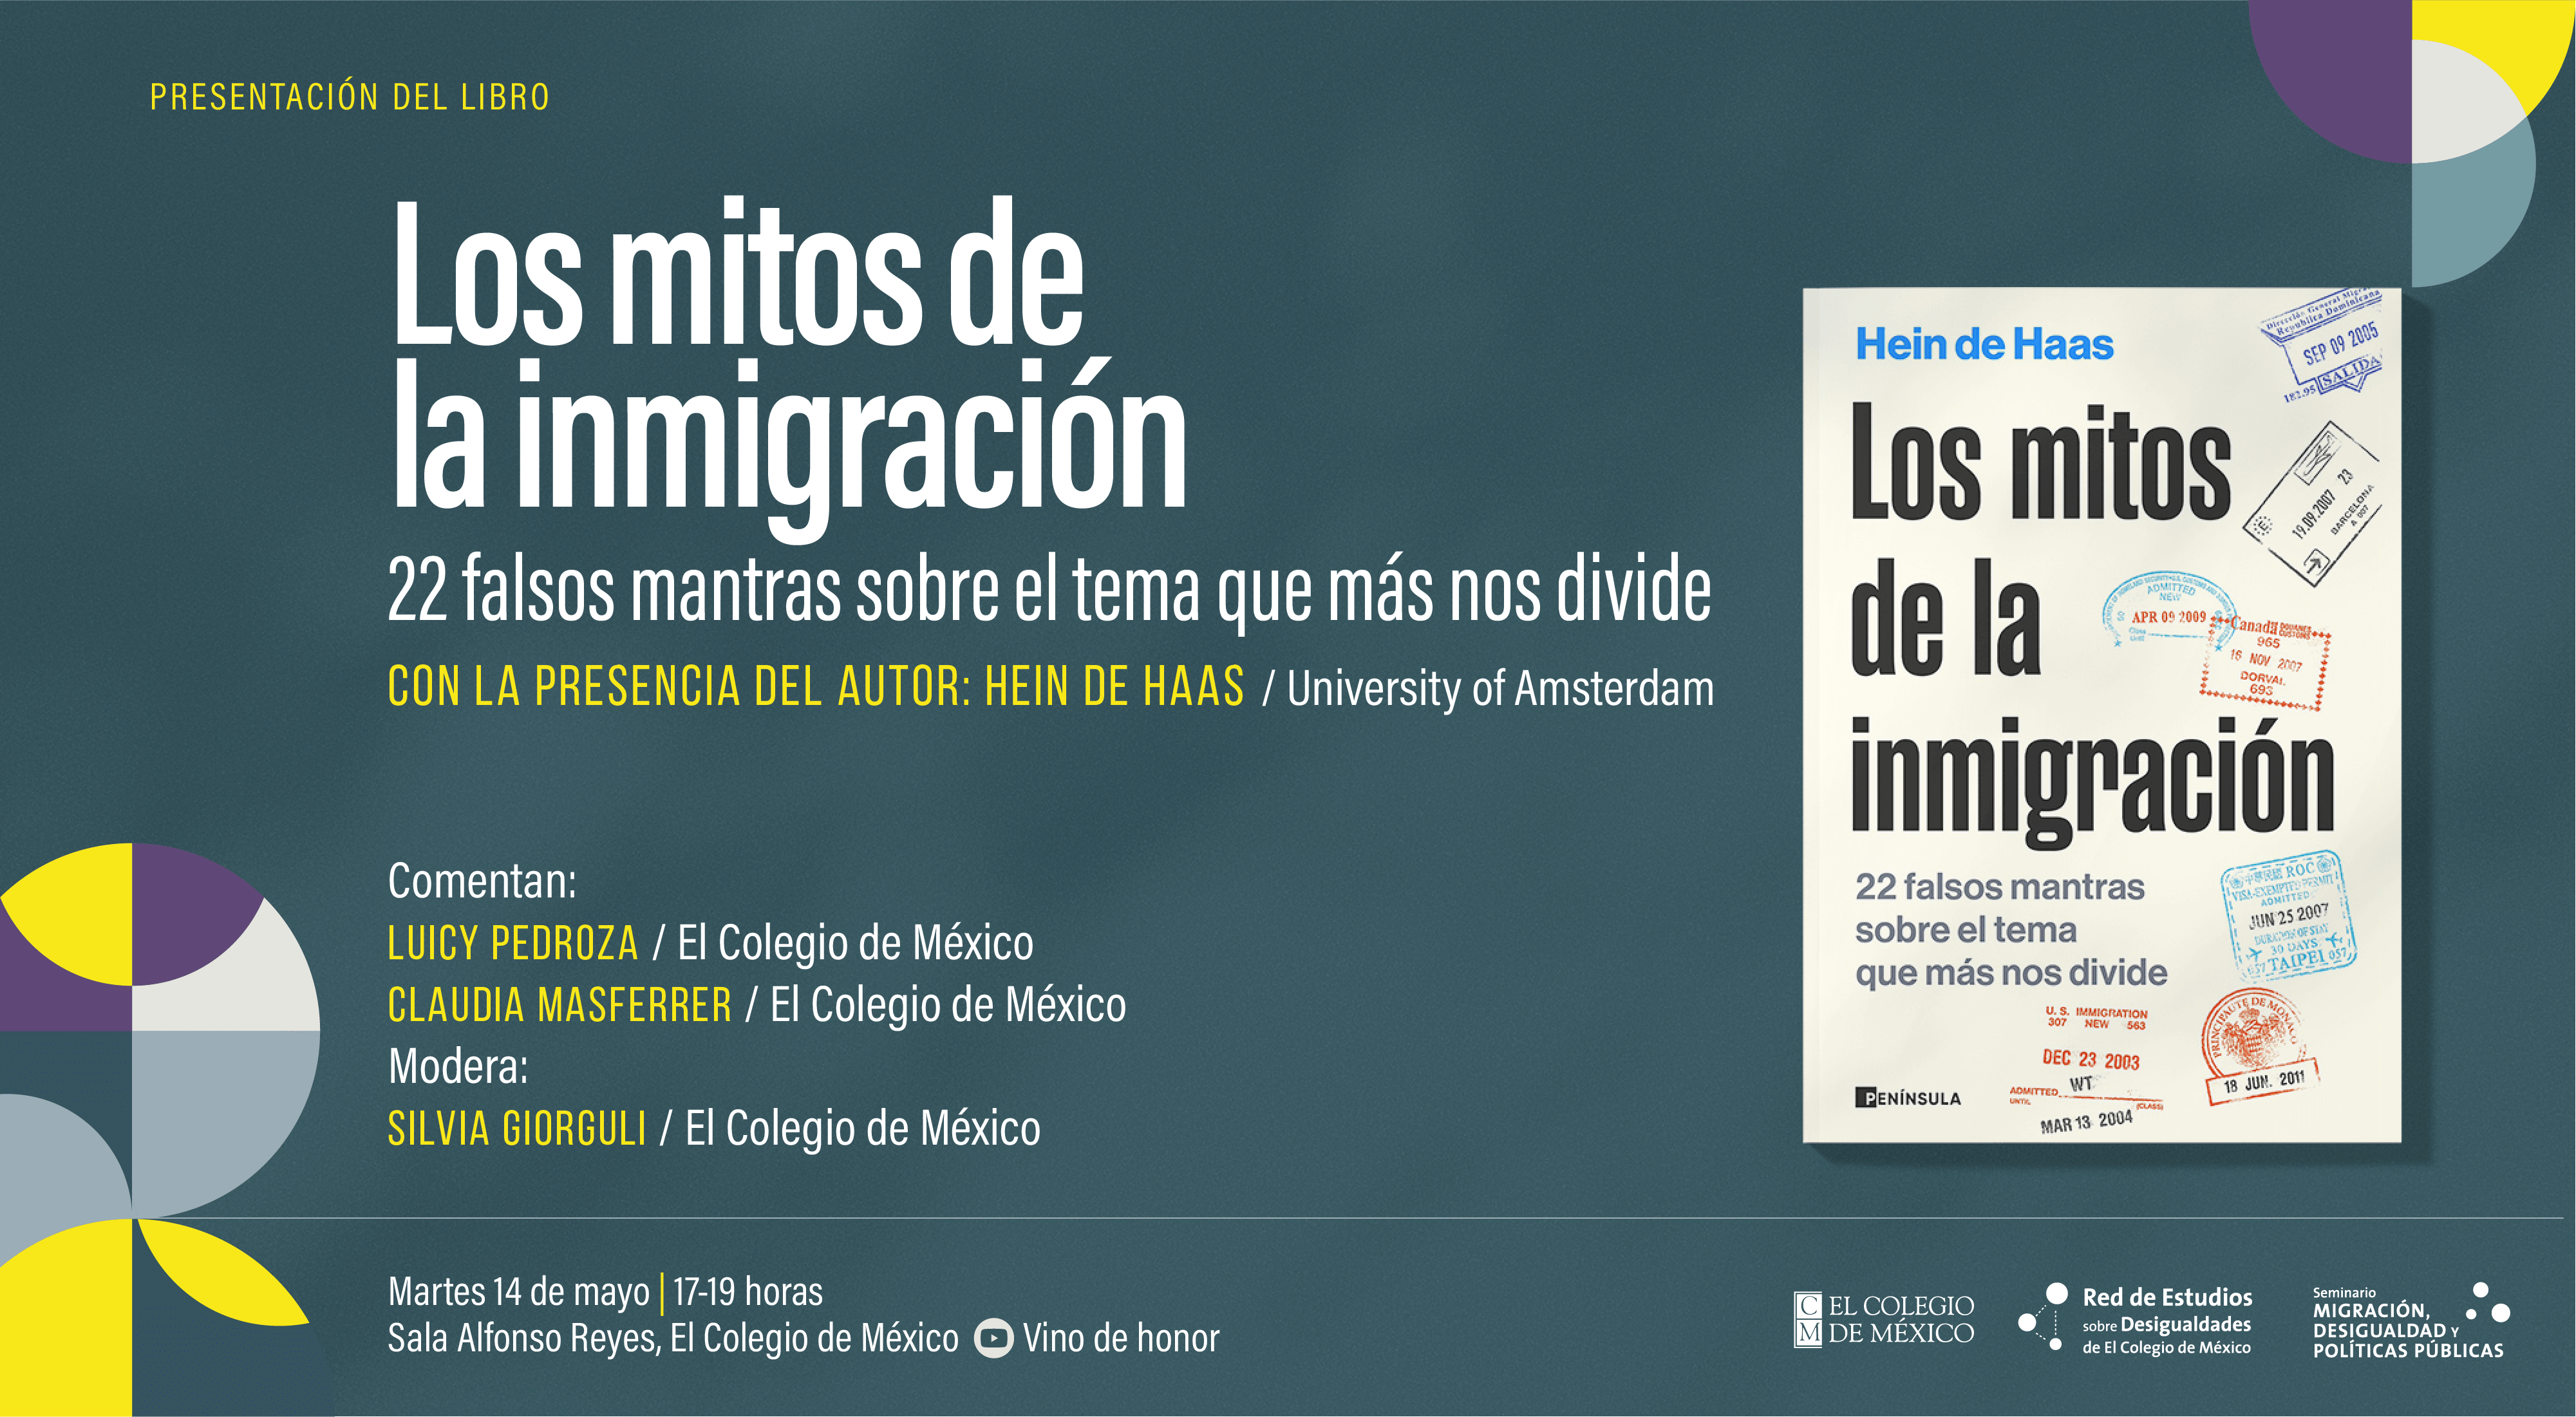 Presentación del libro Los mitos de la inmigración. 22 falsos mantras sobre el tema que más nos divide